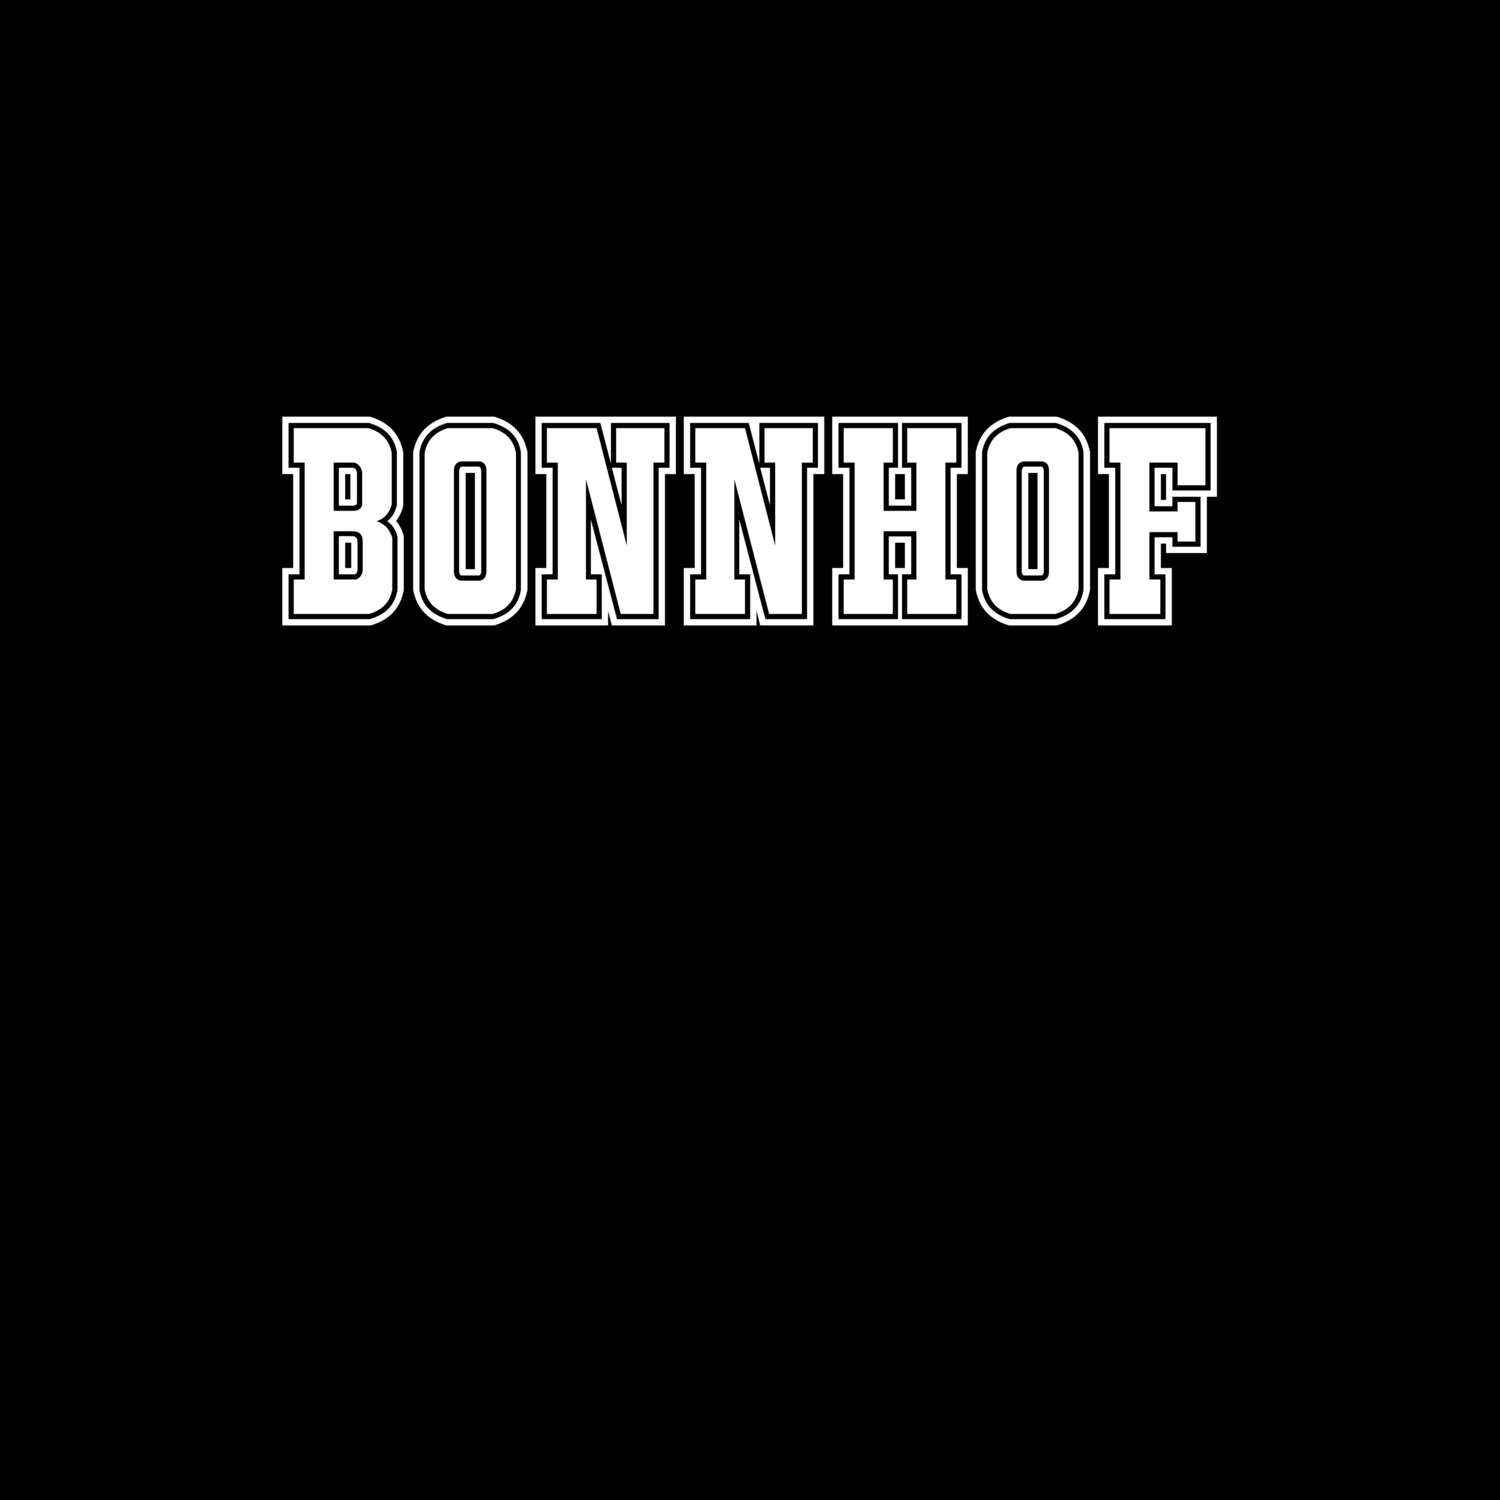 Bonnhof T-Shirt »Classic«